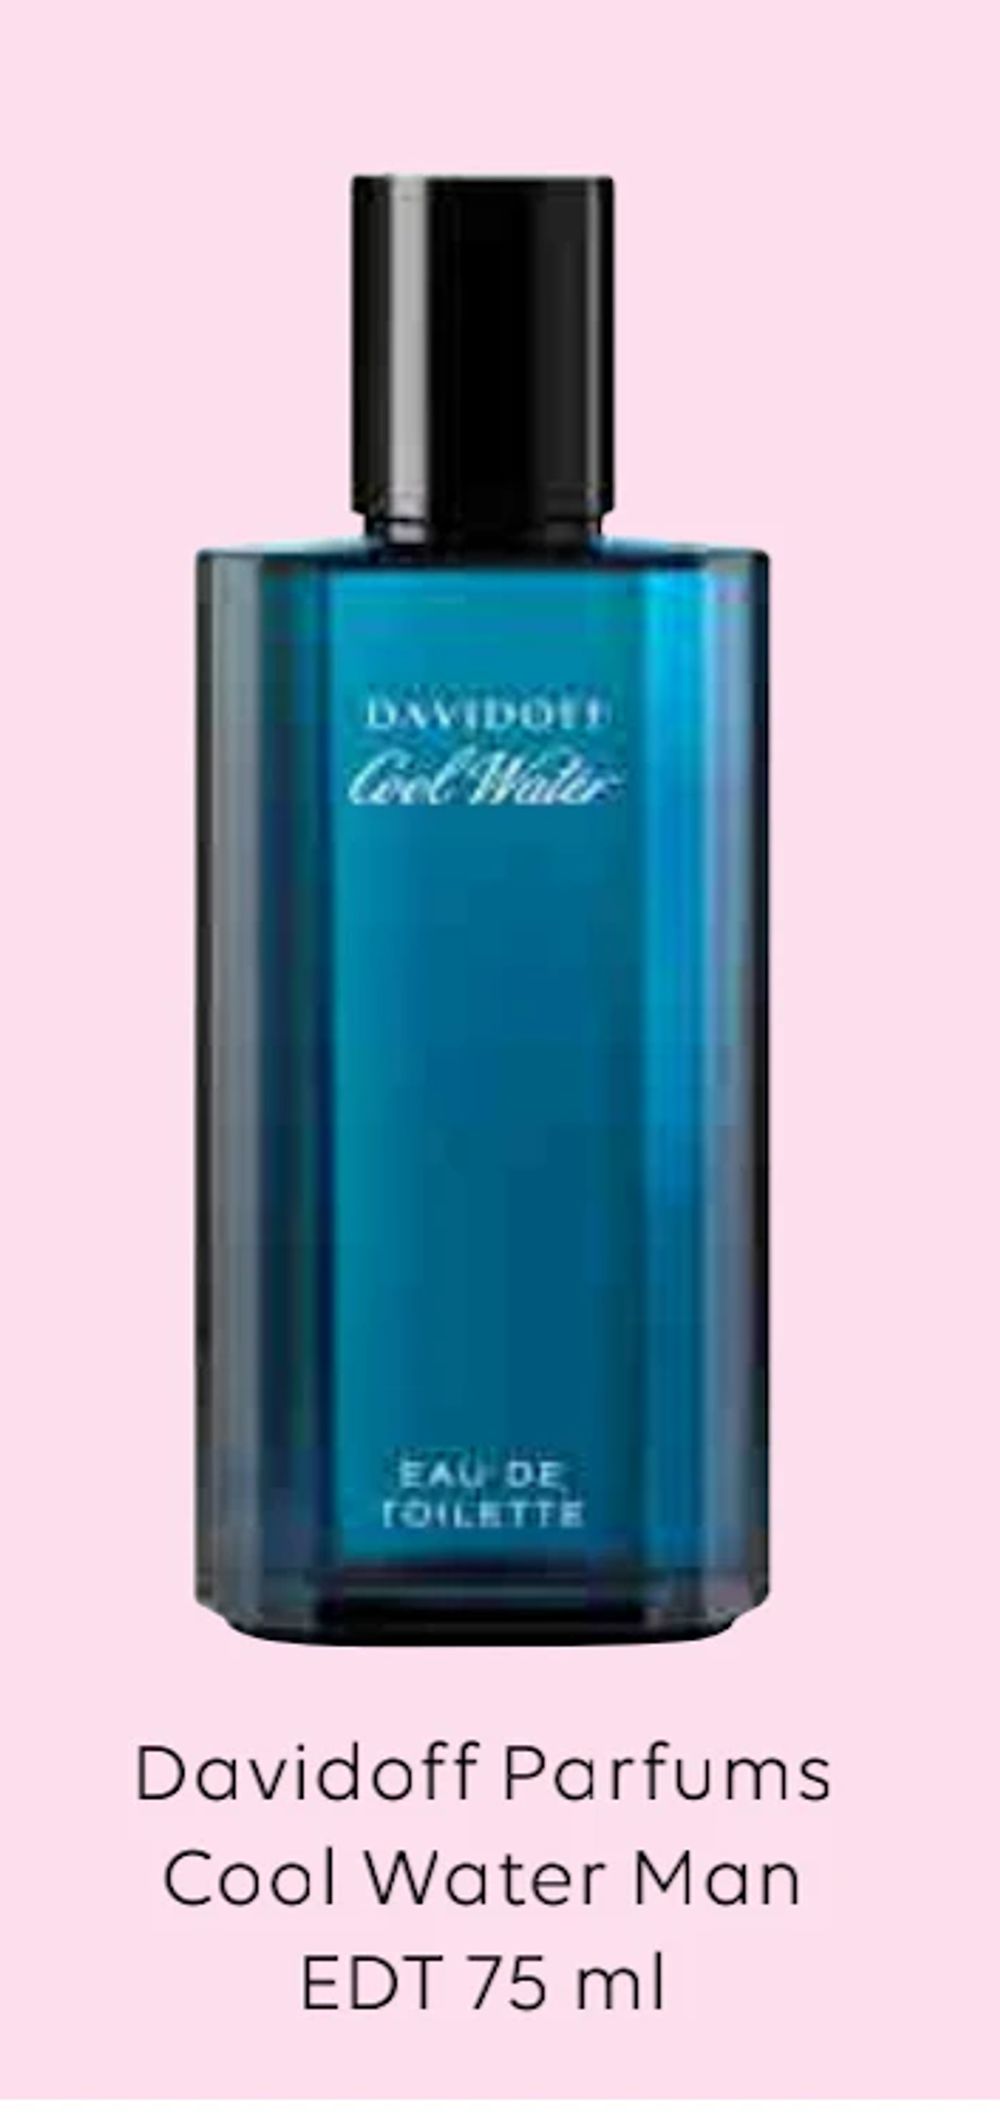 Tilbud på Davidoff Parfums Cool Water Man fra Scandlines Travel Shop til 249 kr.